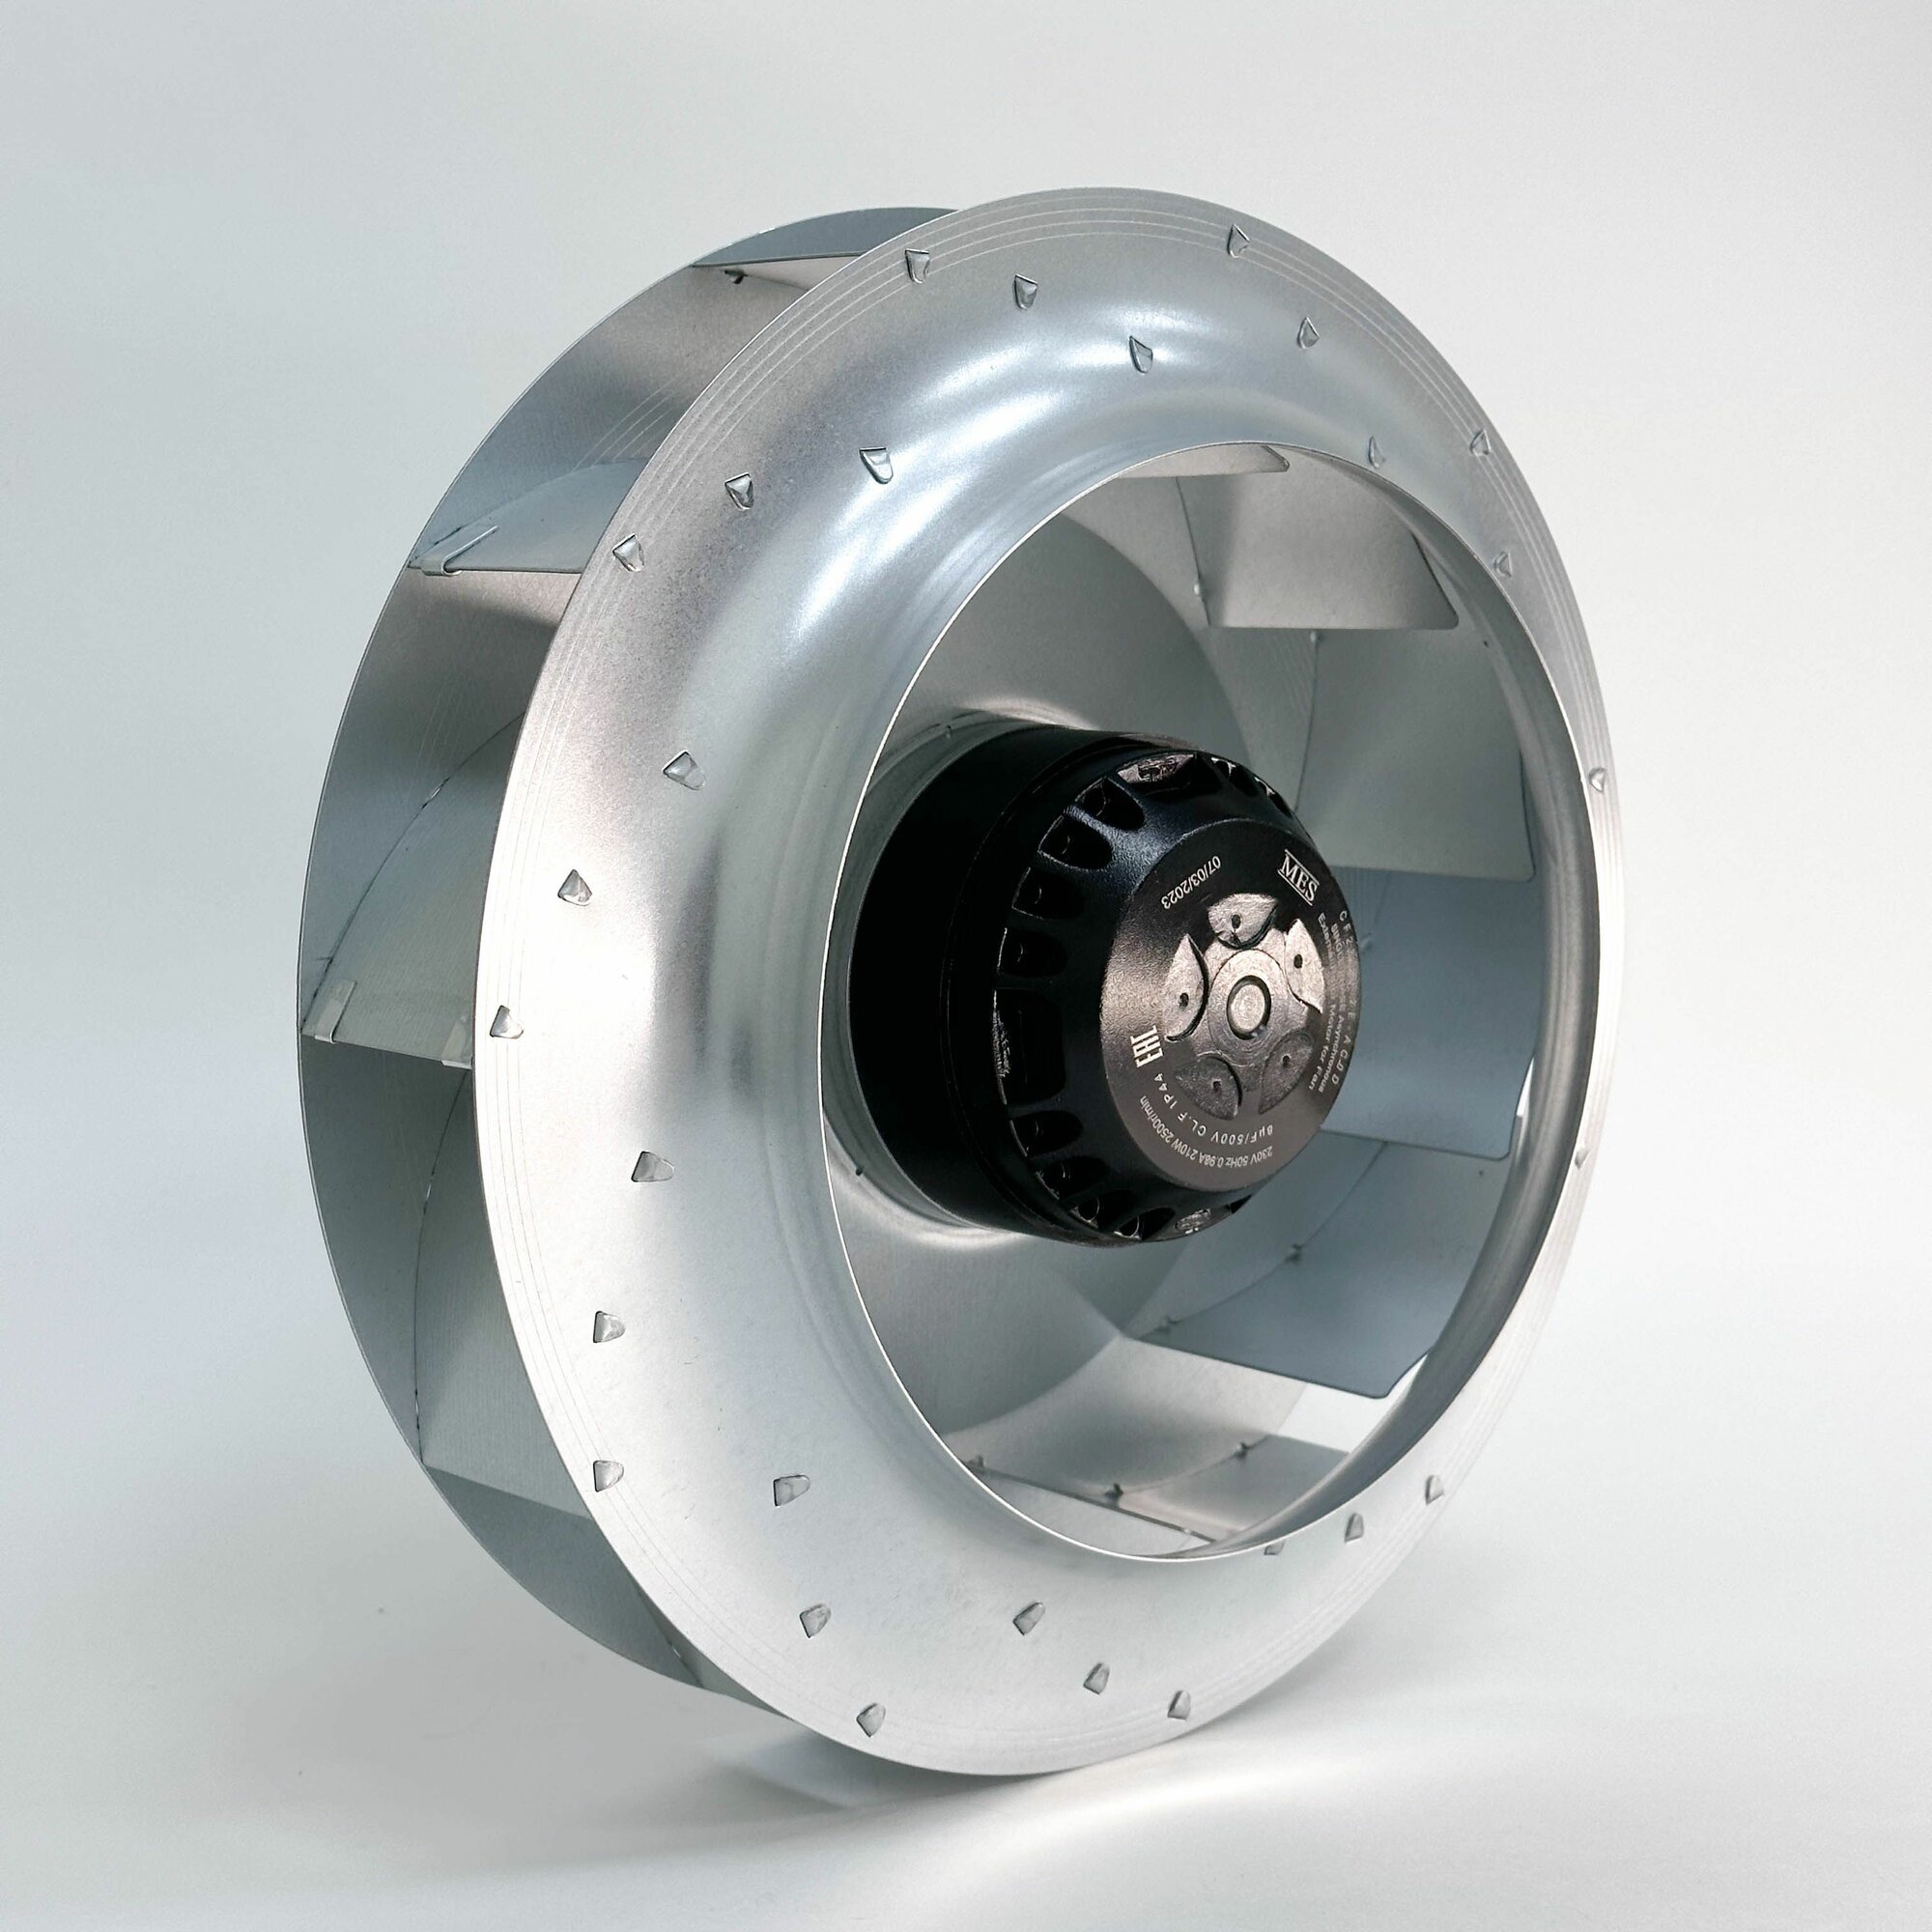 Мотор-колесо MES CF280B-2E-AC0D диаметр 280 мм центробежное, для круглых канальных вентиляторов d 315 мм, 230В, 1650 м3 в час, 600 Па, 210 Вт, 0.98 А, IP 44